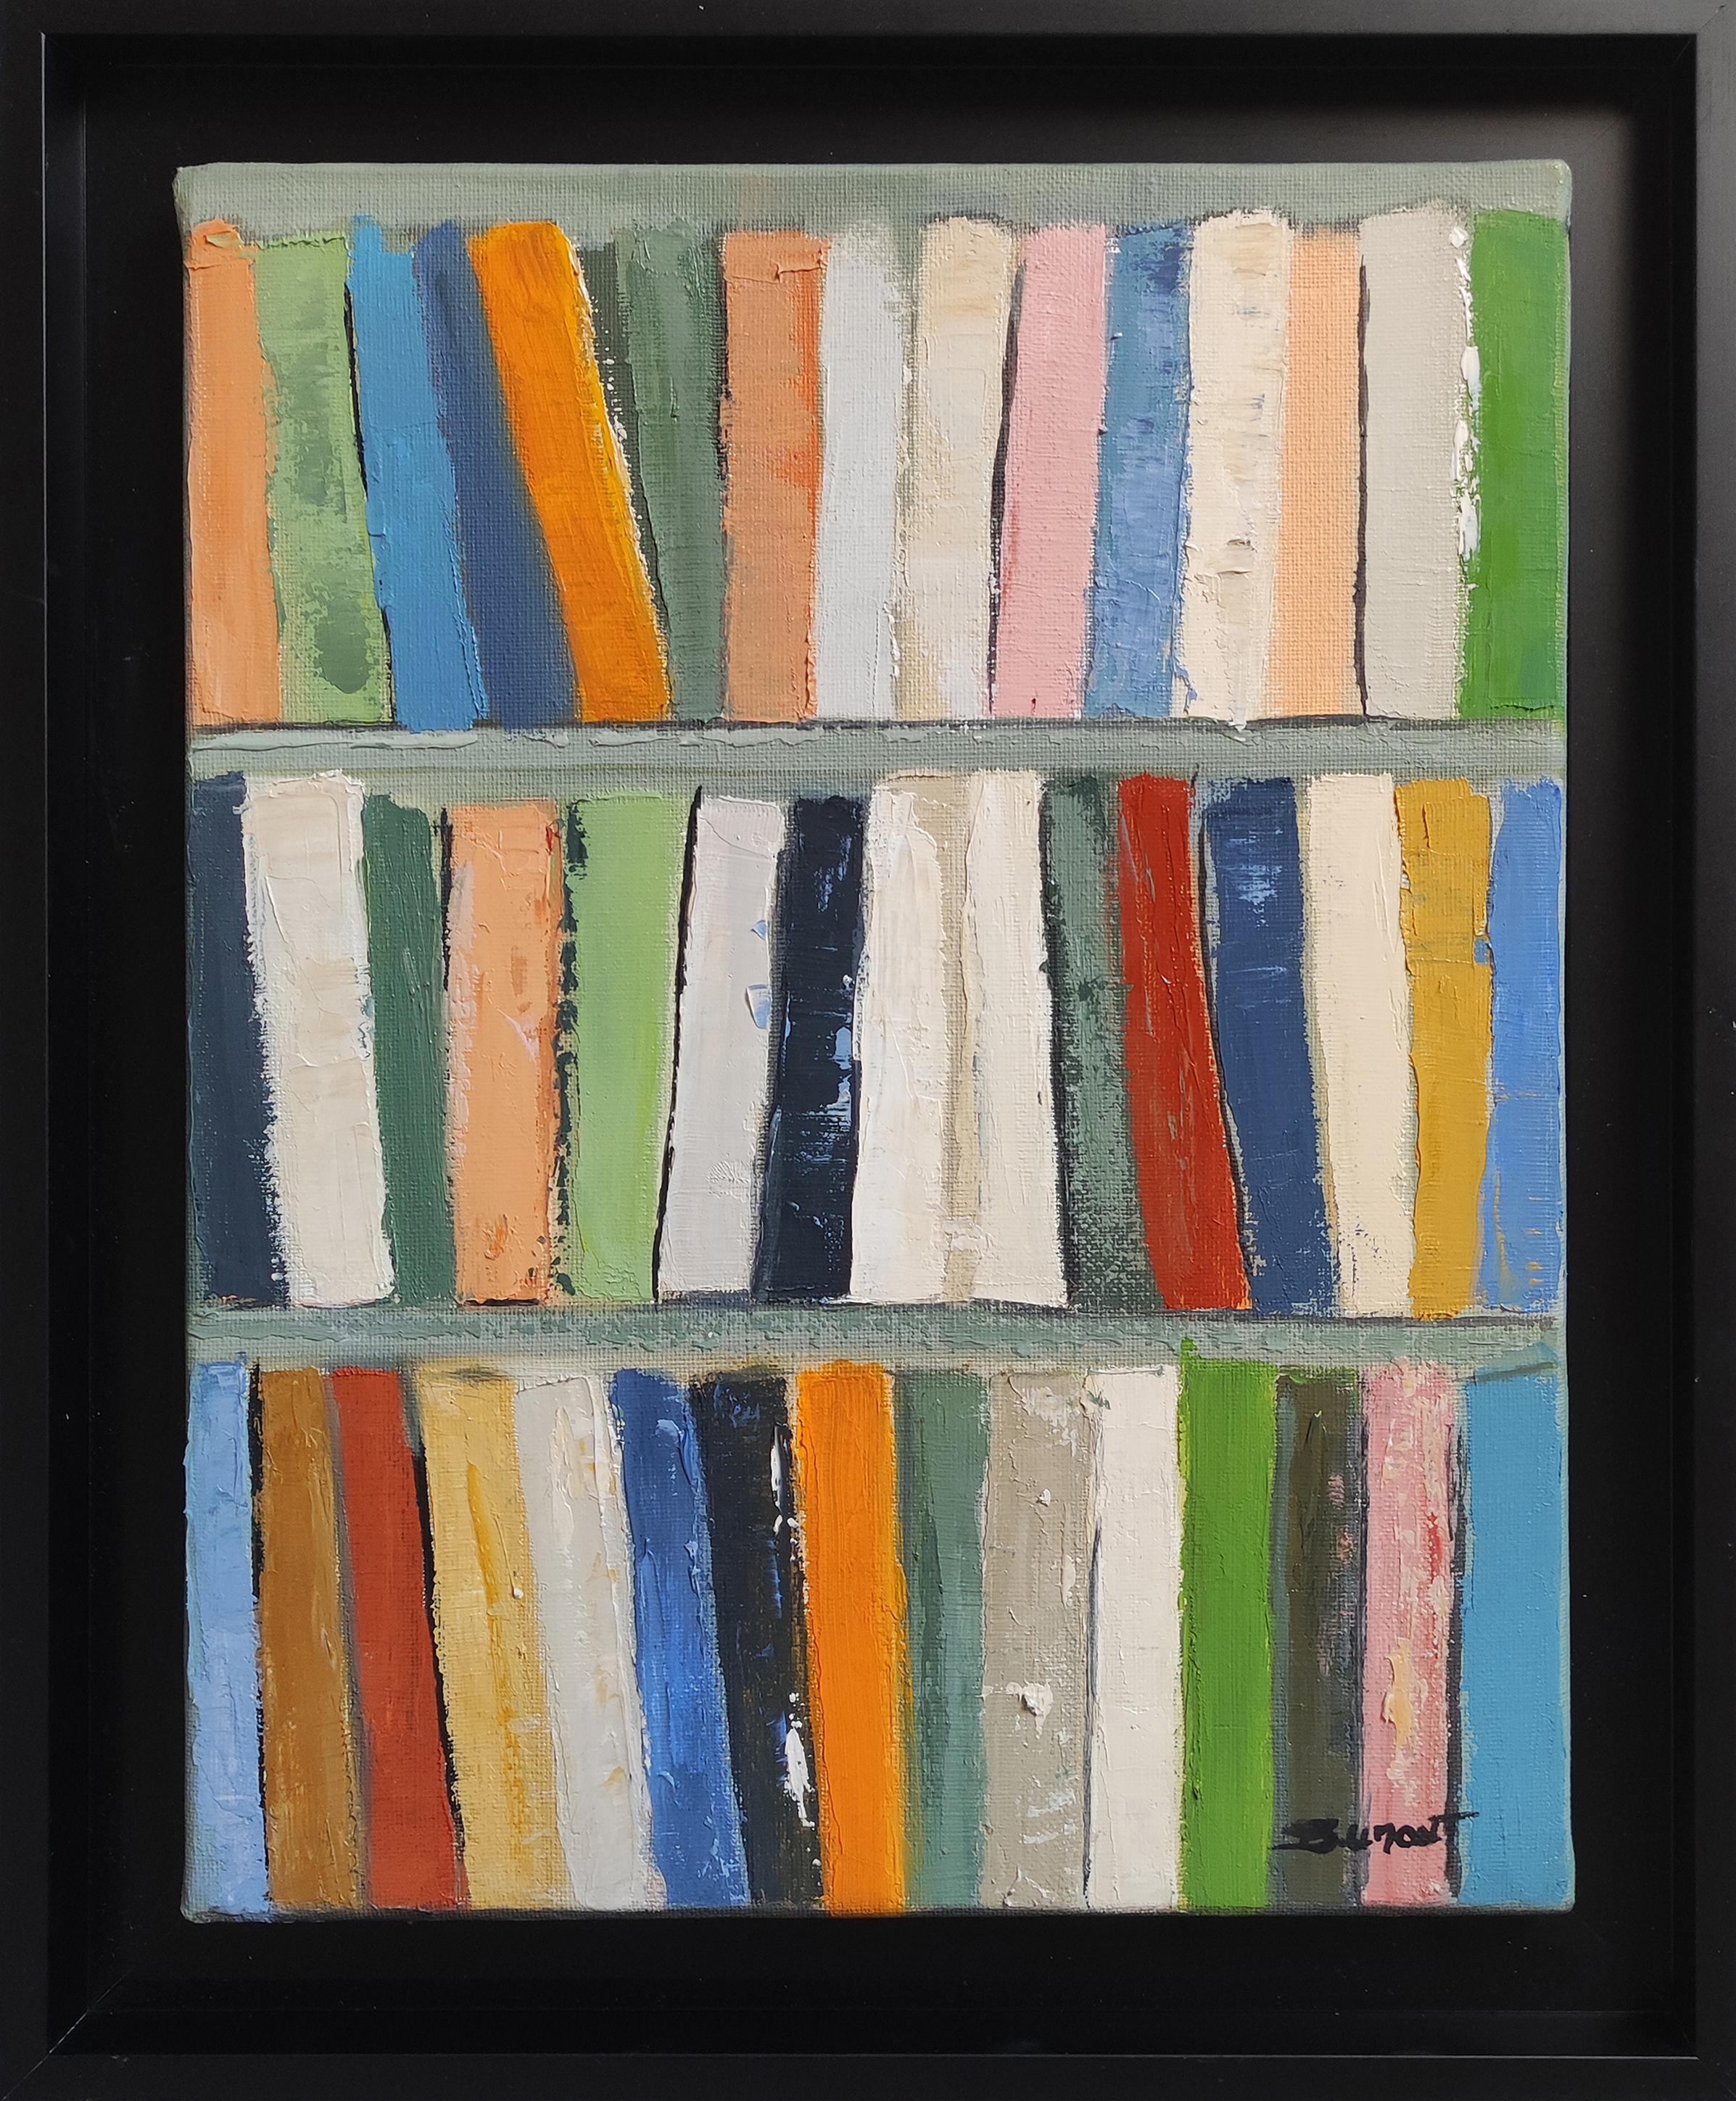 SOPHIE DUMONT Abstract Painting – legendes, mehrfarbiges Öl auf Leinwand, Bücher, abstrakt; zeitgenössischer Expressionismus